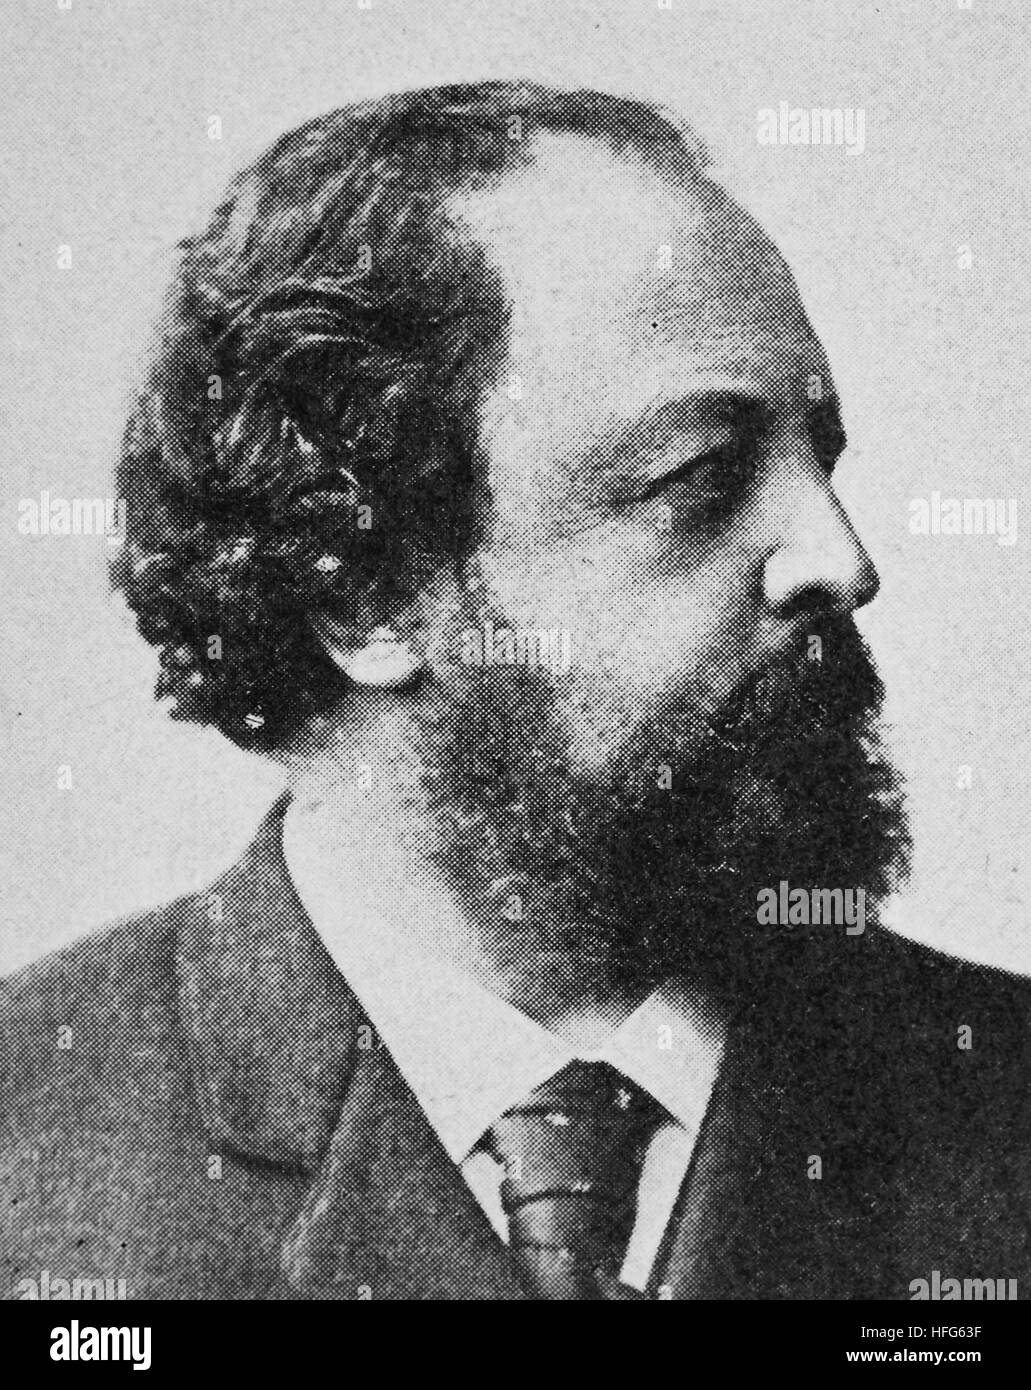 Paul Johann Ludwig von Heyse, war 1830-1914, eine angesehene deutsche Schriftsteller und Übersetzer, Reproduktion Foto aus dem Jahr 1895, digital verbessert Stockfoto